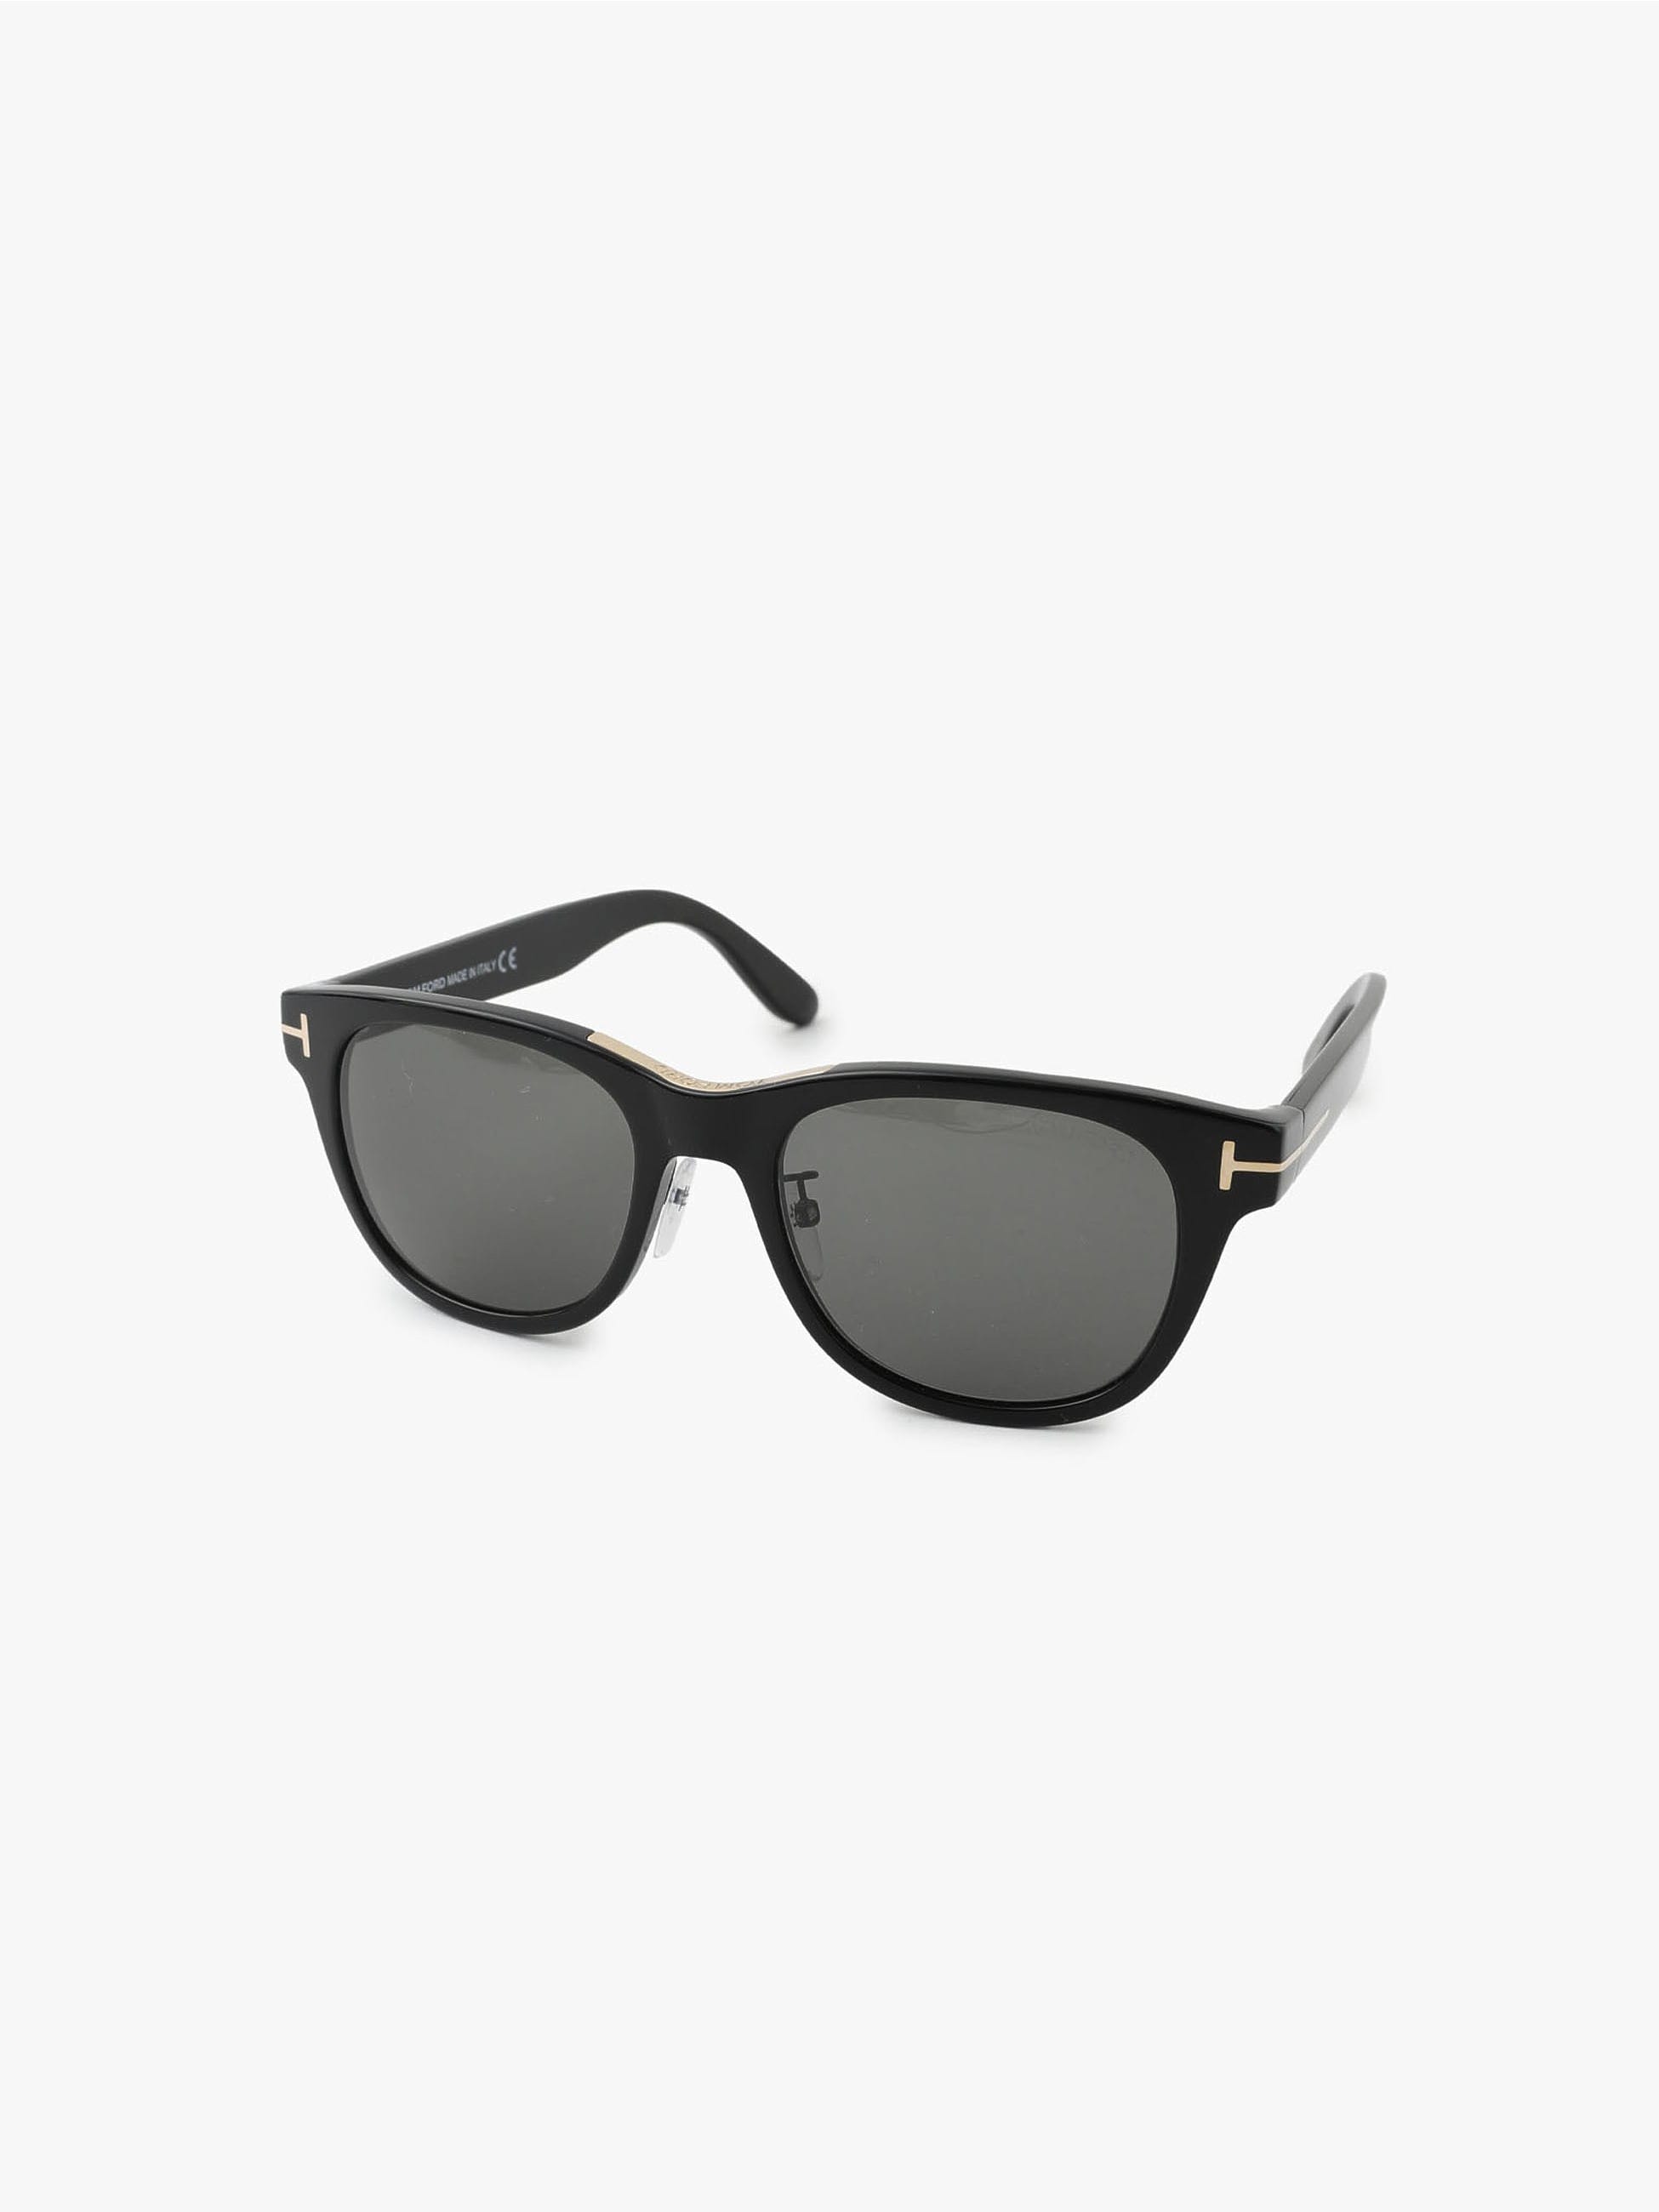 Sunglasses (FT9257)